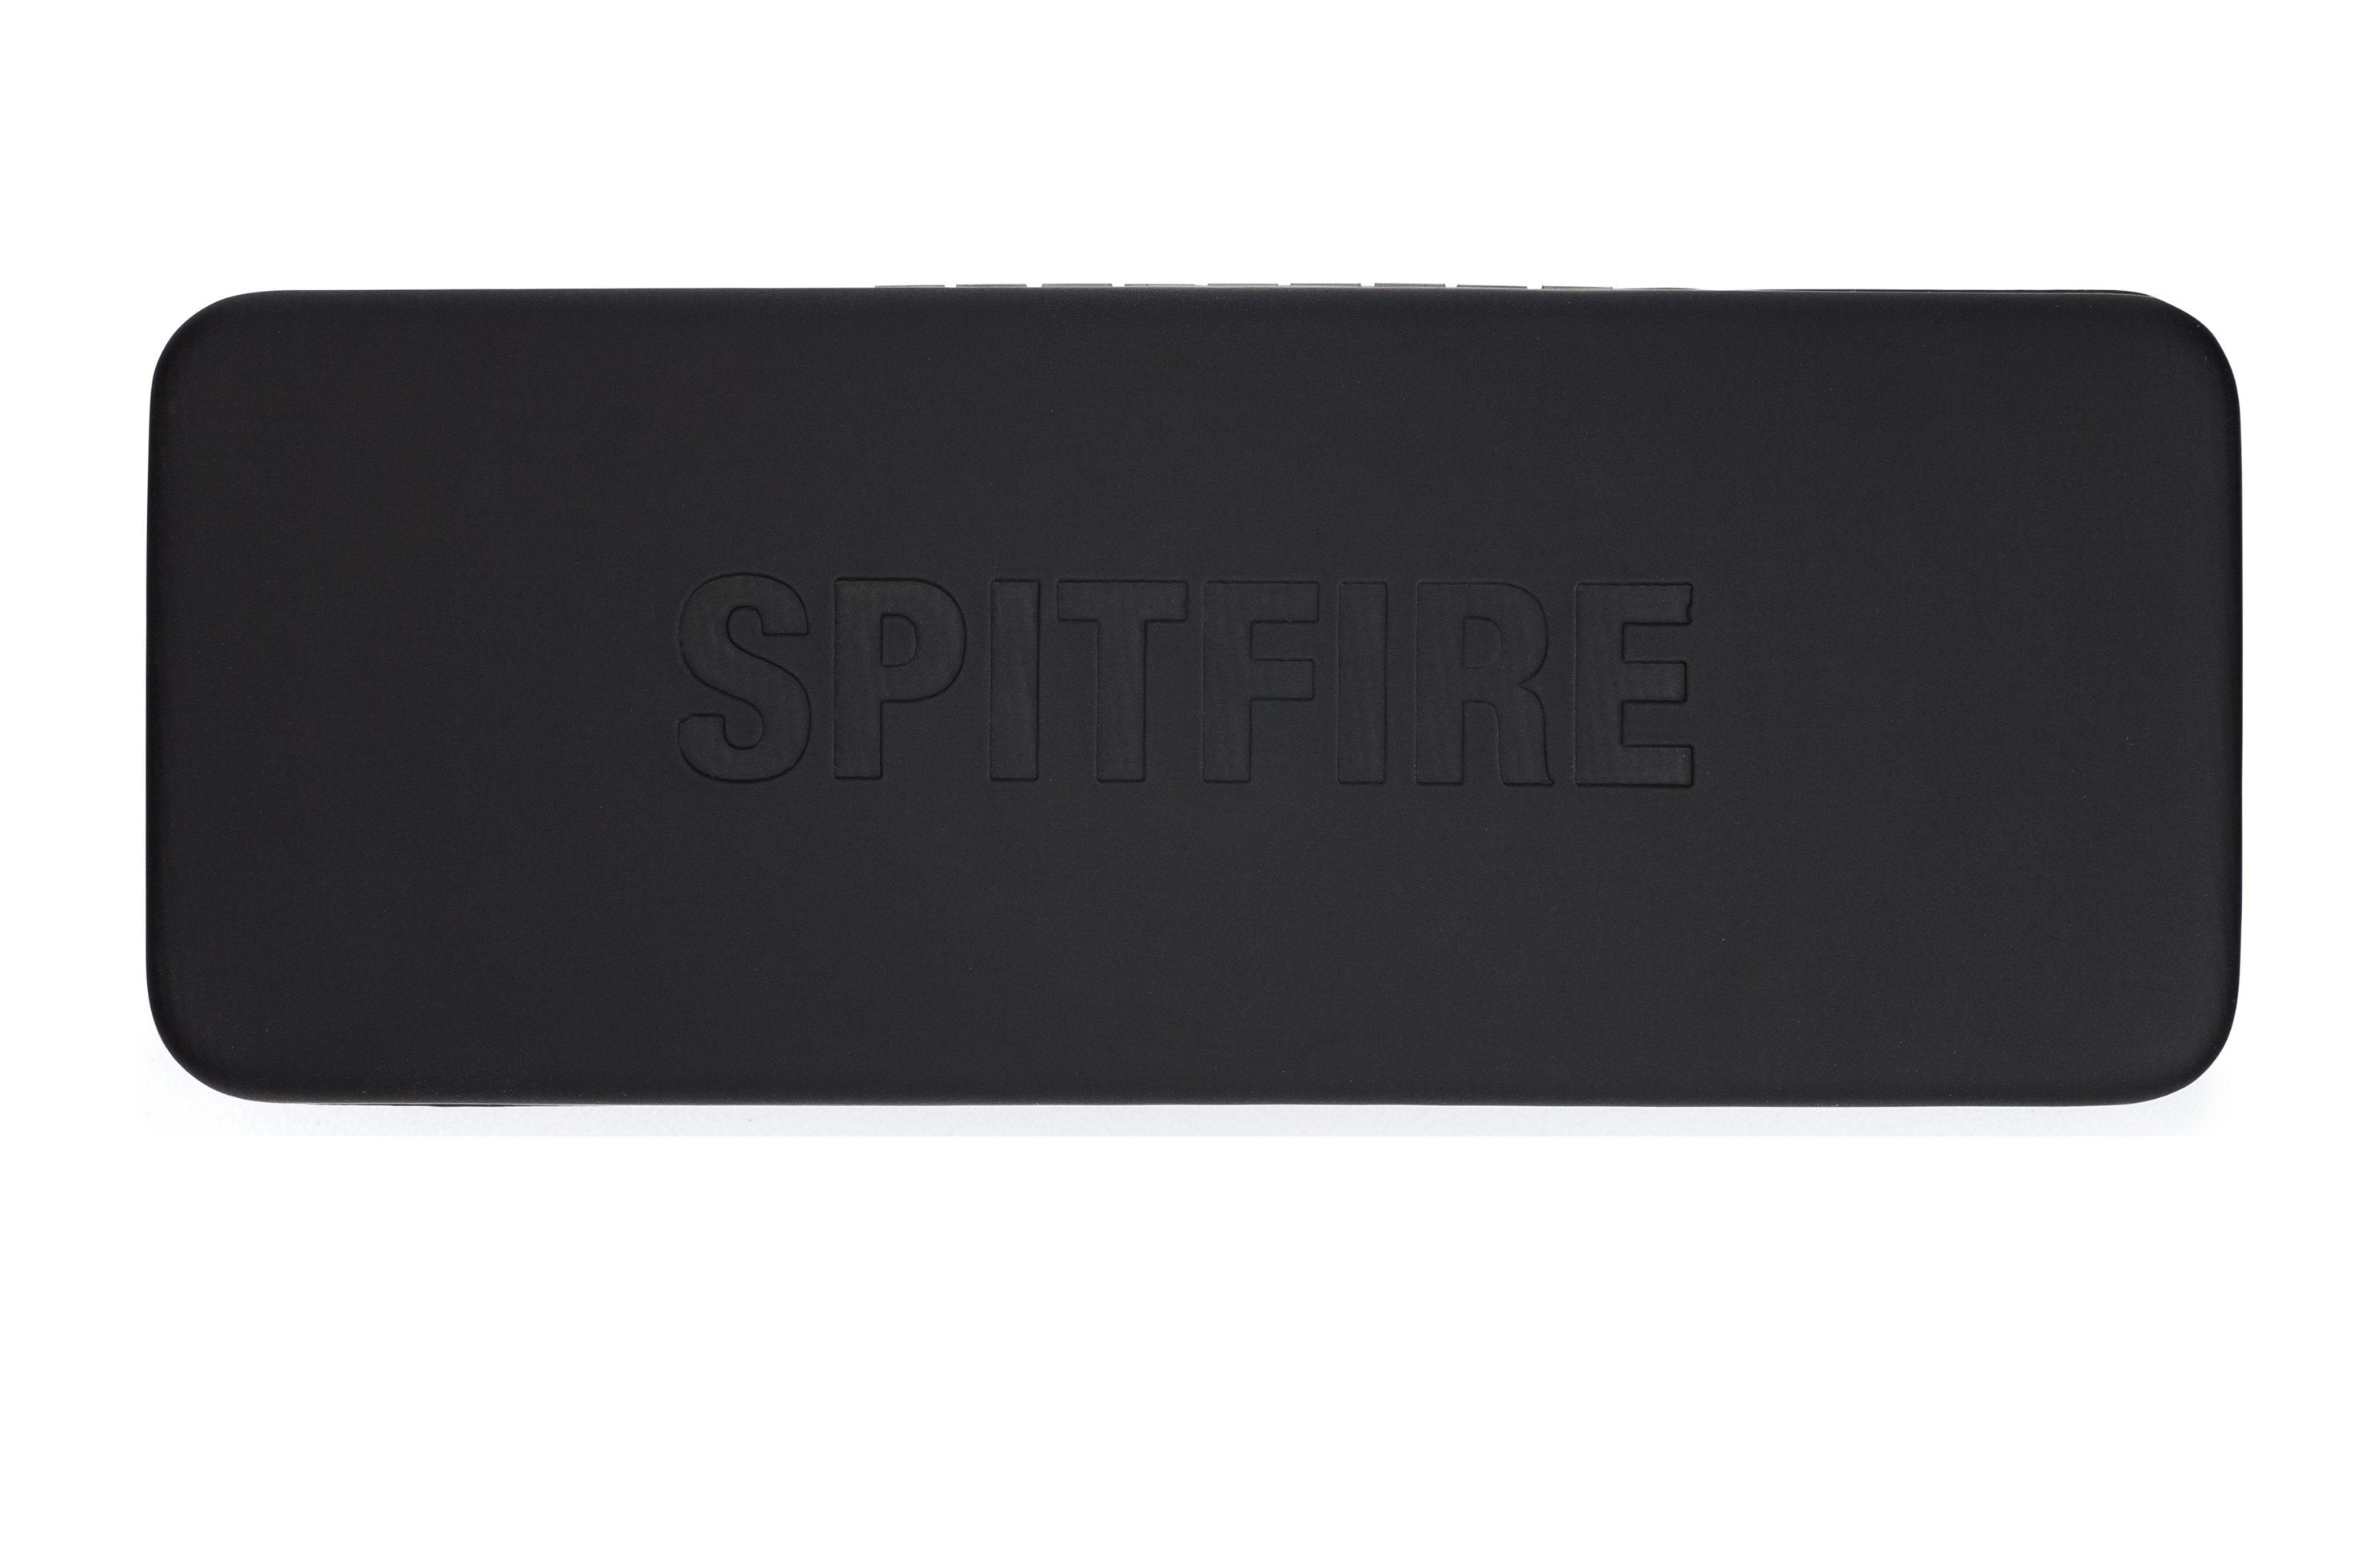 cut fifteen (BLUE LIGHT BLOCKER) - Spitfire